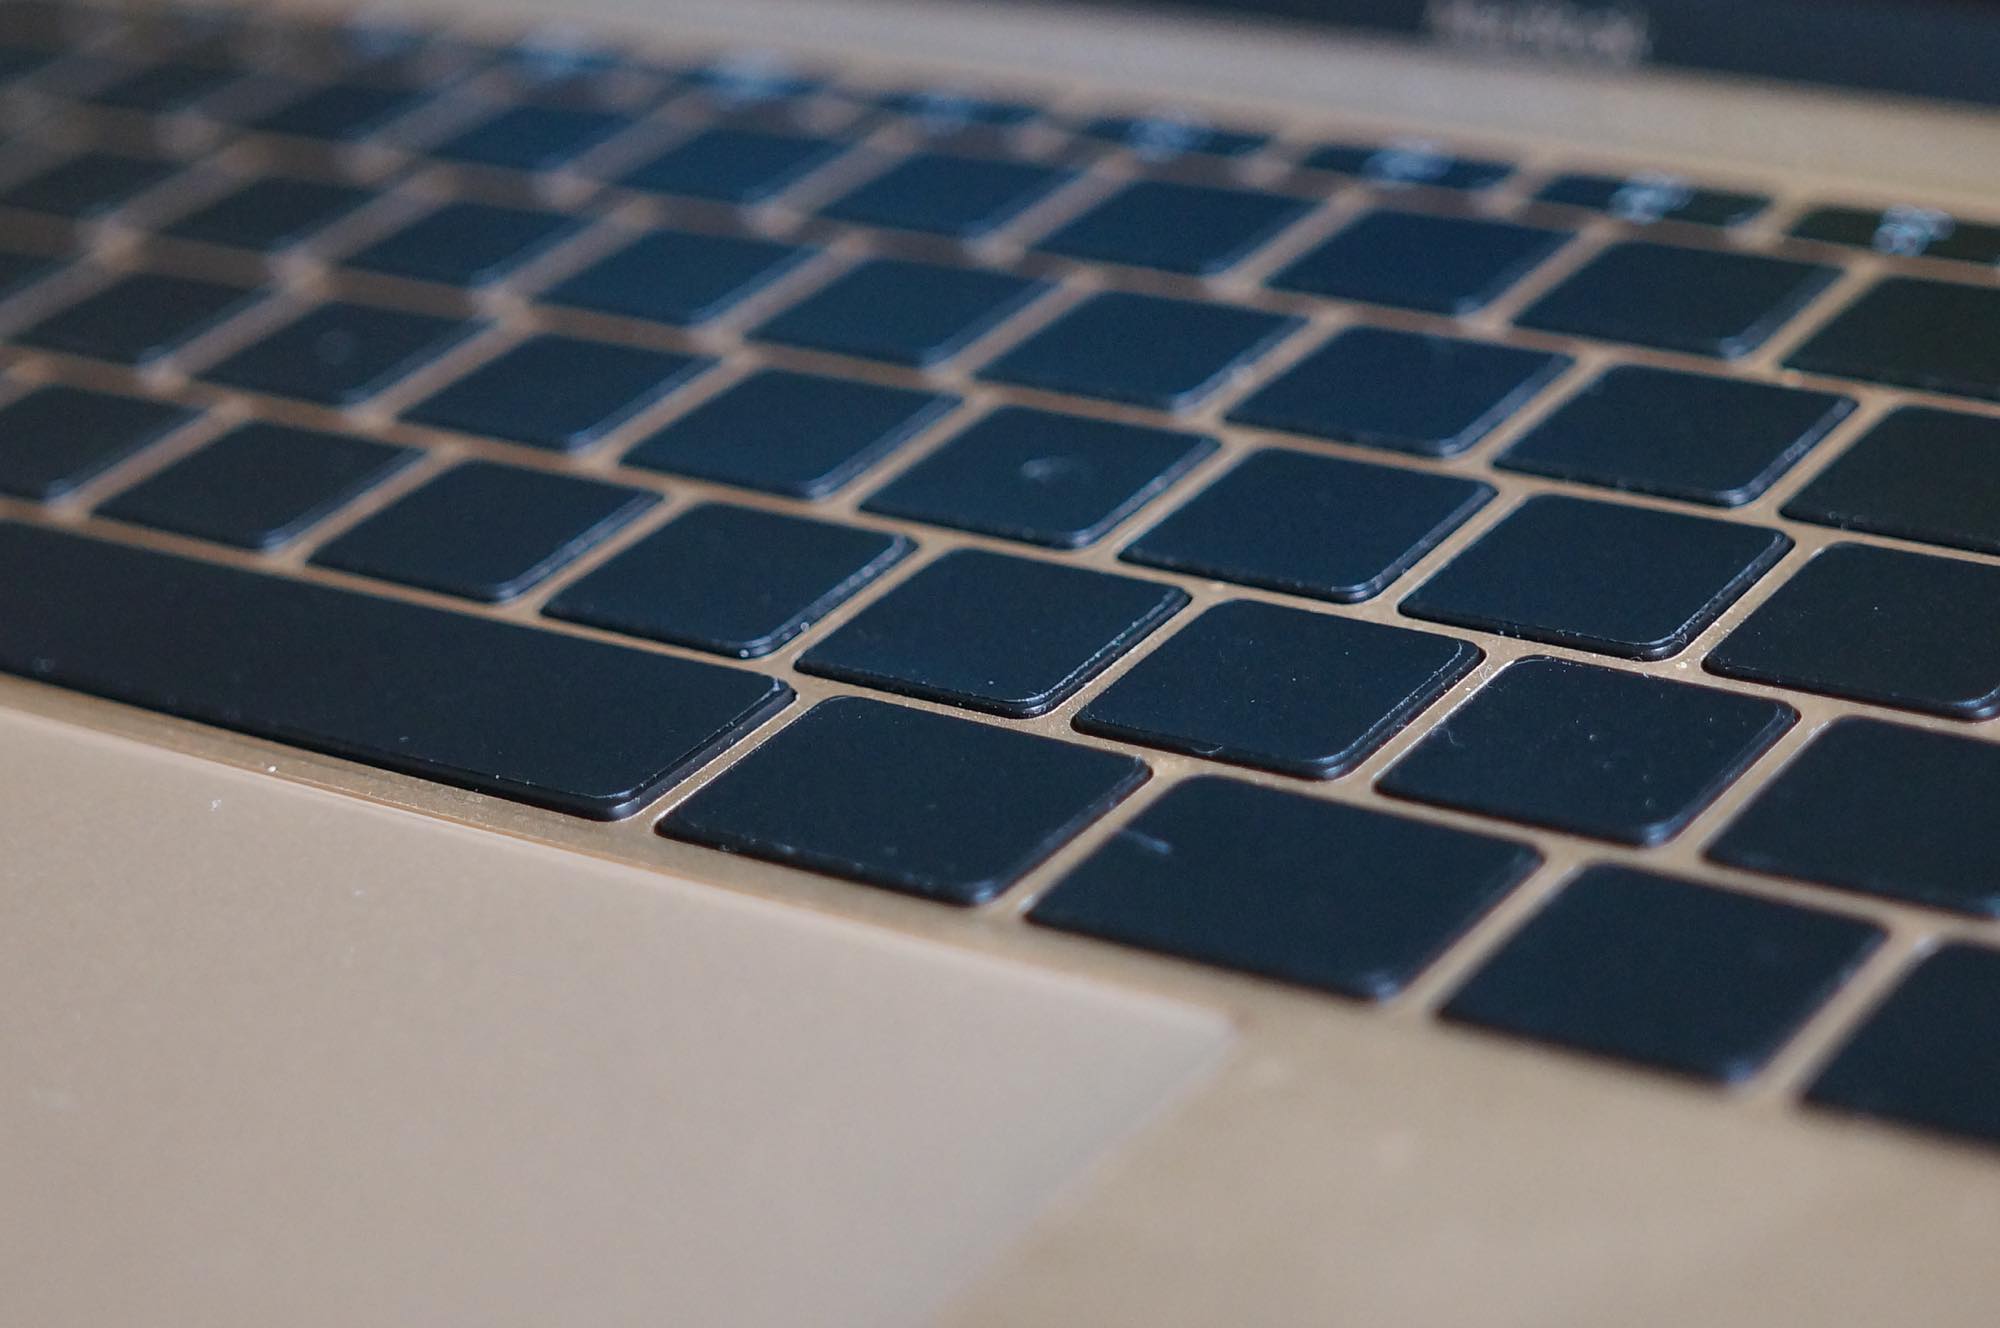 MacBookのキーボードをシンプルに。ブラックアウトステッカーでキーを無地にしてみた